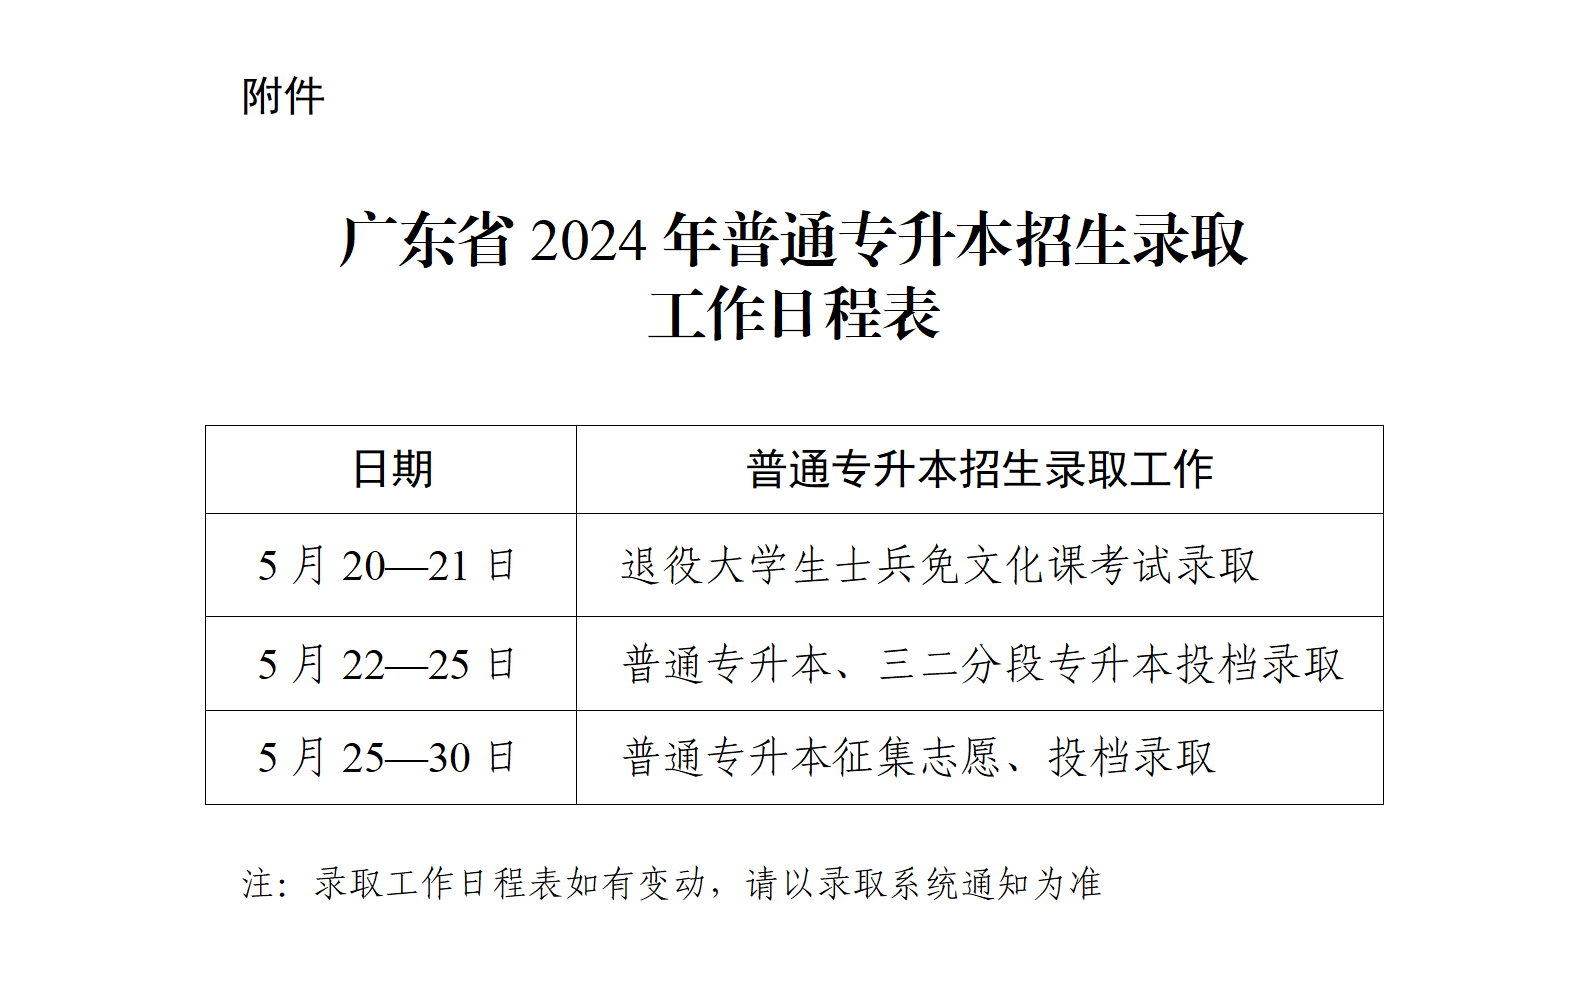 广东今年普通专升本招生录取工作将于5月20日至30日进行